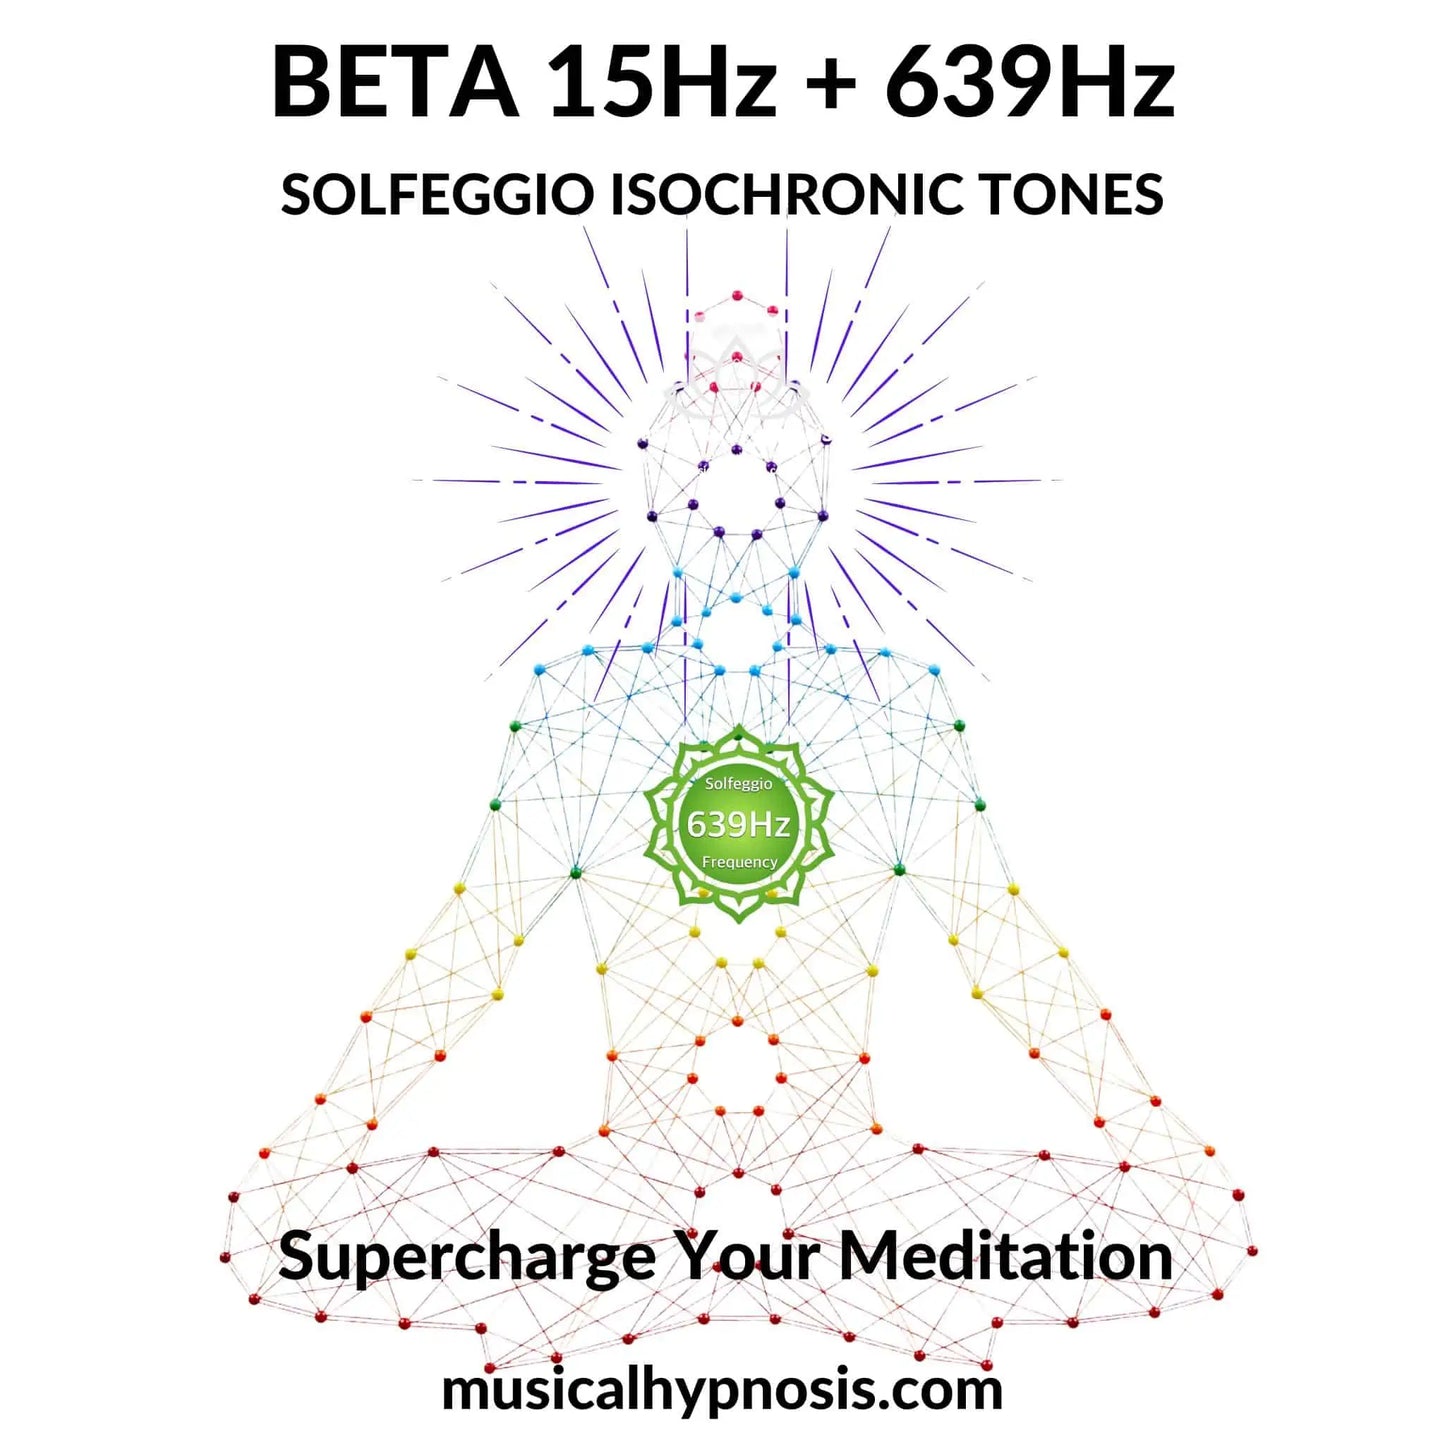 Beta 15Hz and 639Hz Solfeggio Isochronic Tones | 30 minutes